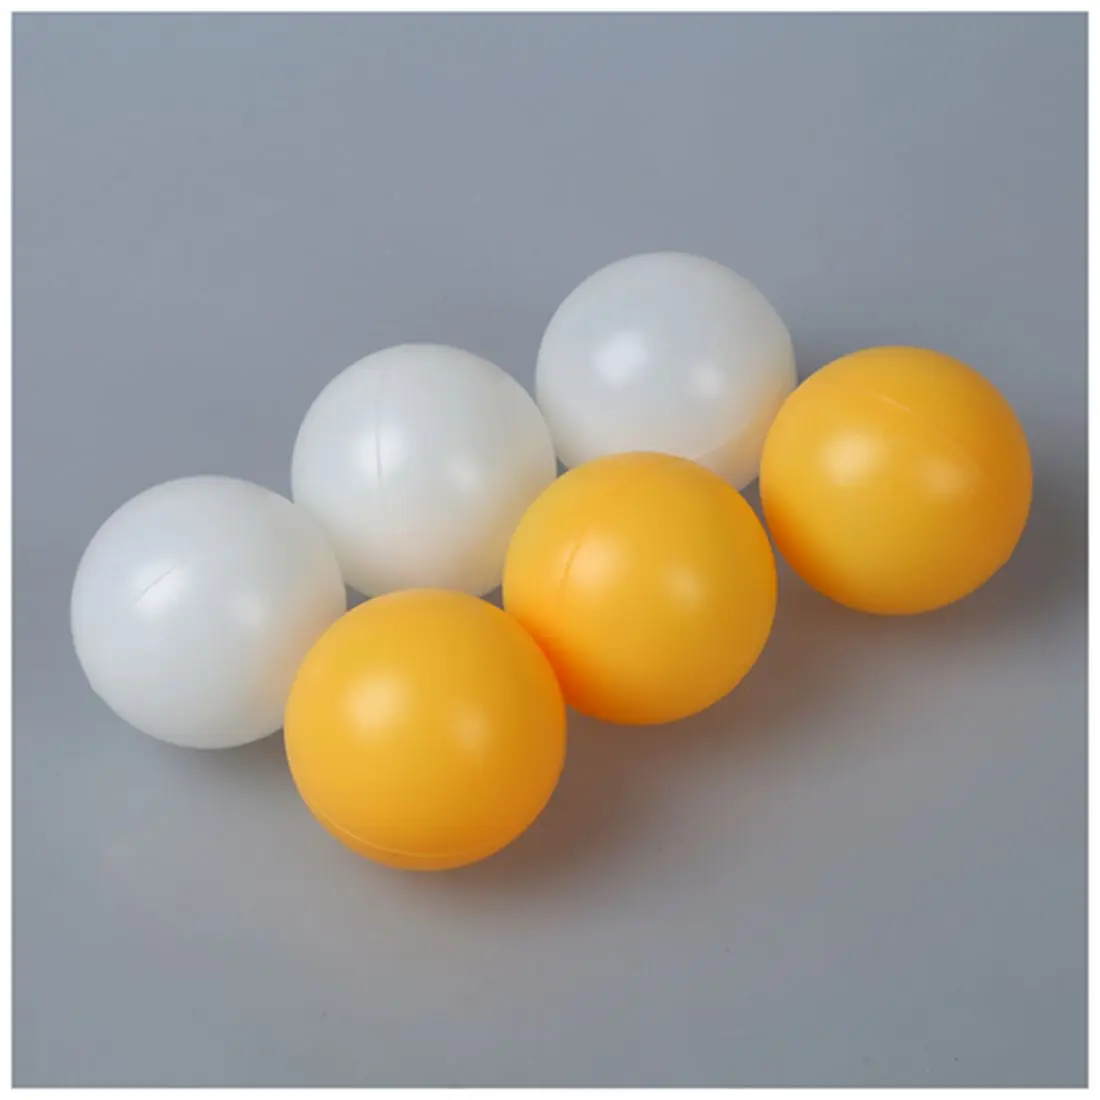 MUMIAN белый желтый 39 мм Диаметр спортивные мячи для настольного тенниса мячик для Пинг-Понга 6 шт